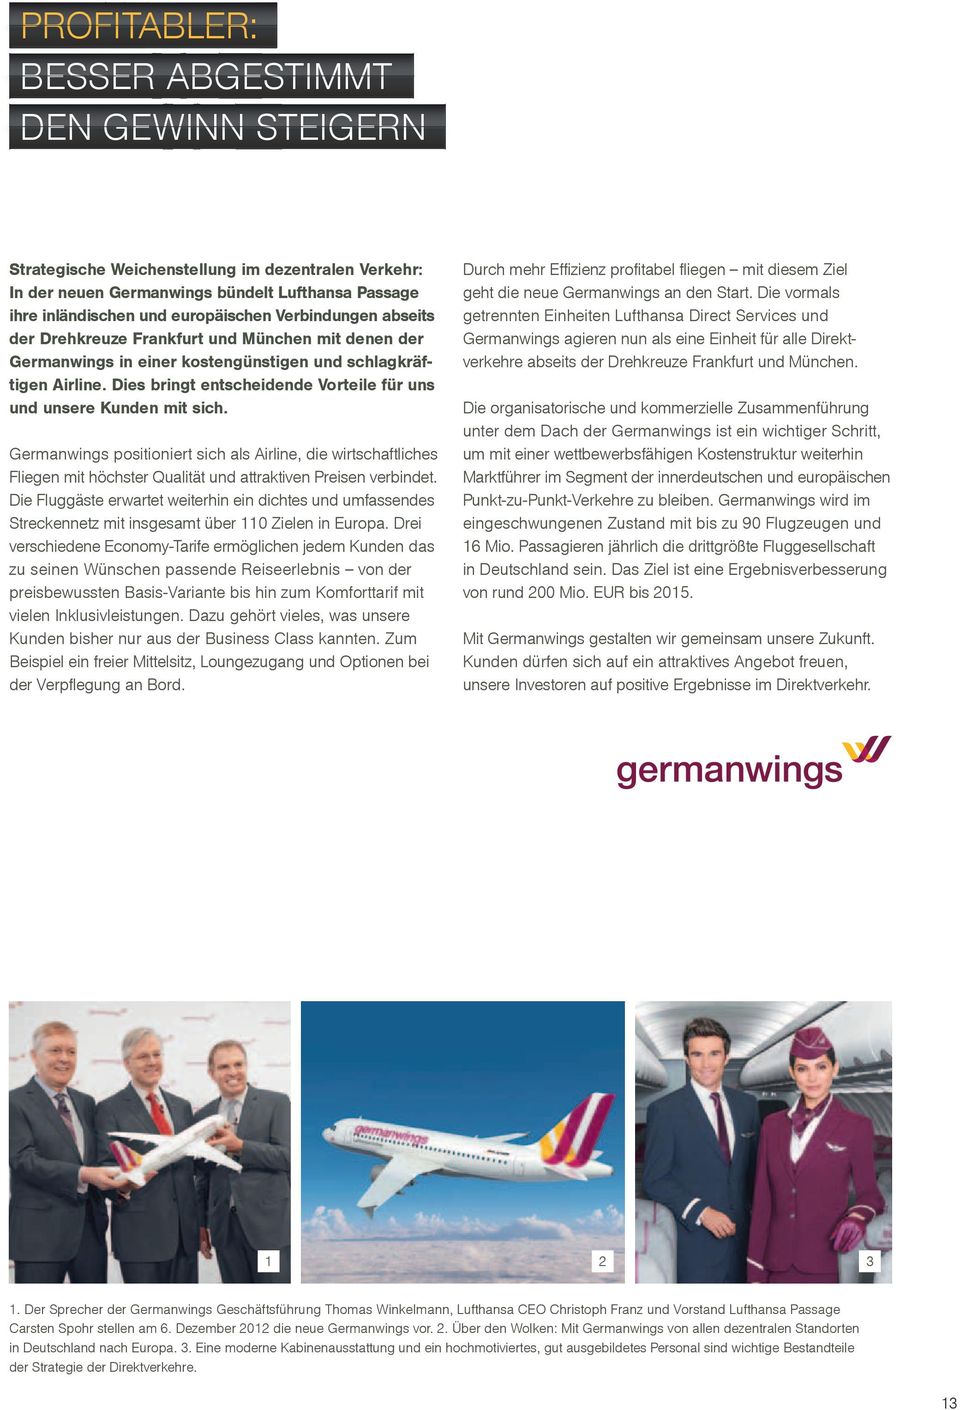 Dies bringt entscheidende Vorteile für uns und unsere Kunden mit sich. Germanwings positioniert sich als Airline, die wirtschaftliches Fliegen mit höchster Qualität und attraktiven Preisen verbindet.